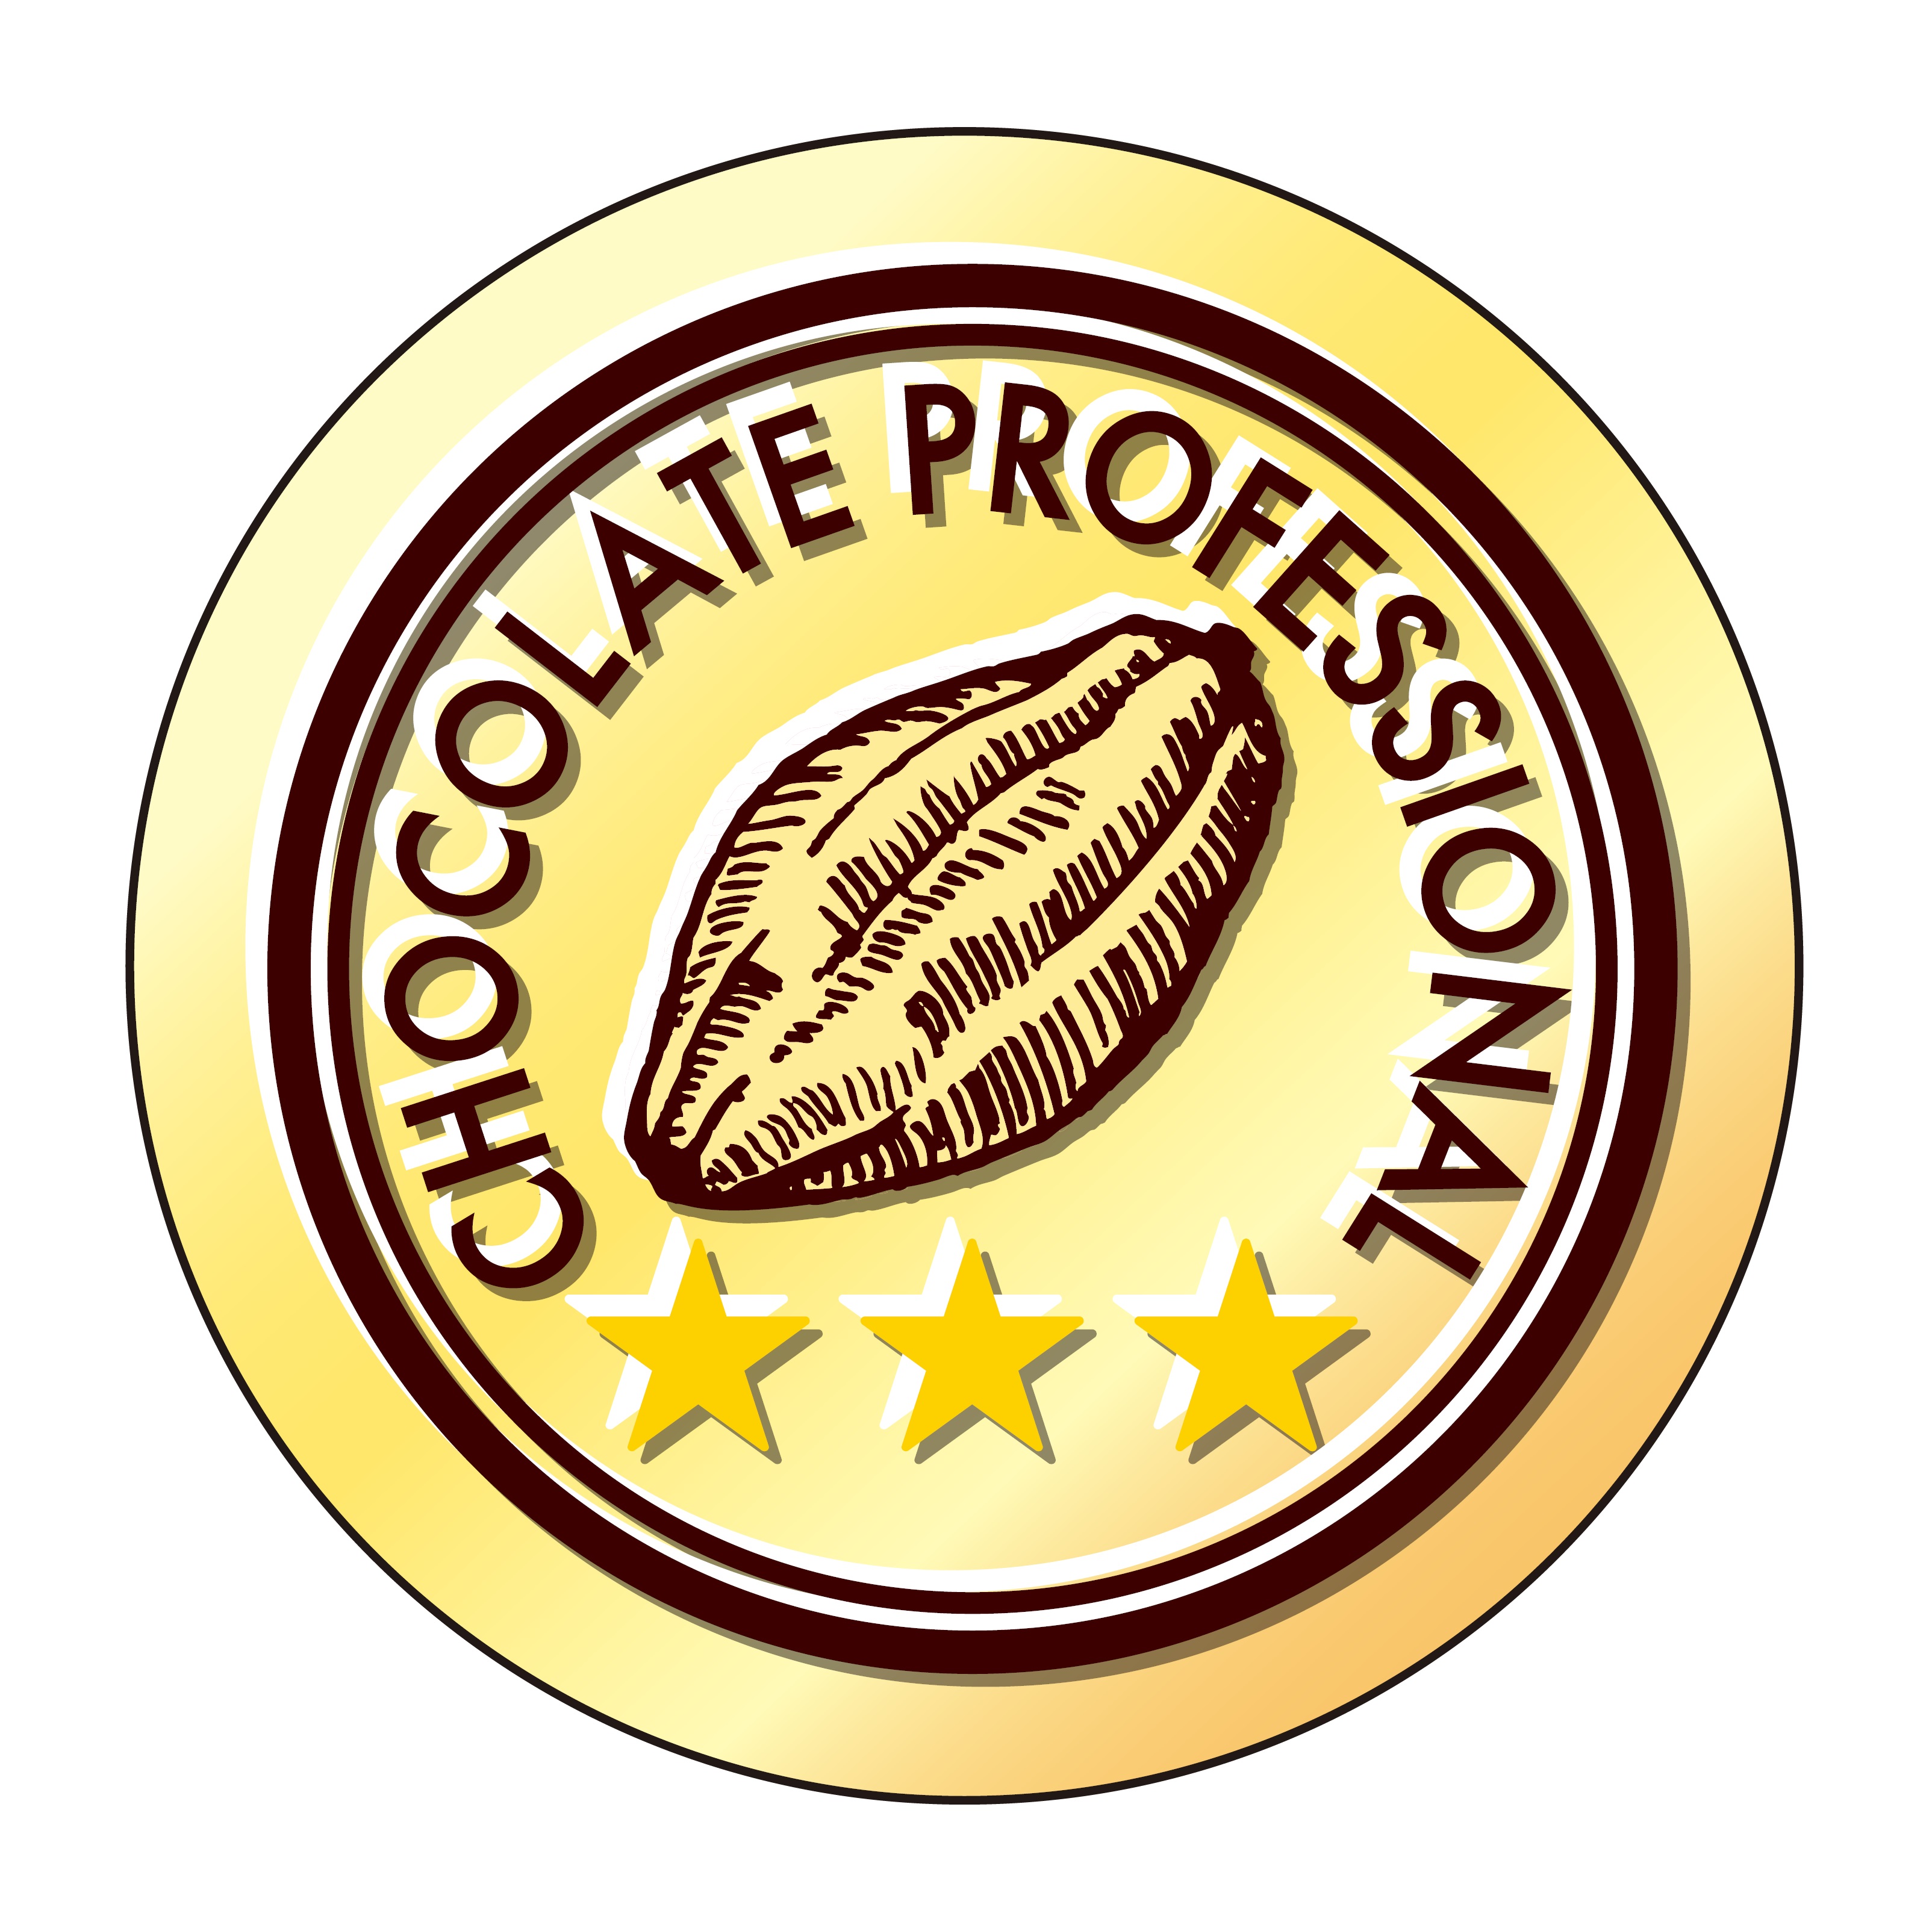 チョコレート プロフェッショナル（上級）の合格認定バッジです。